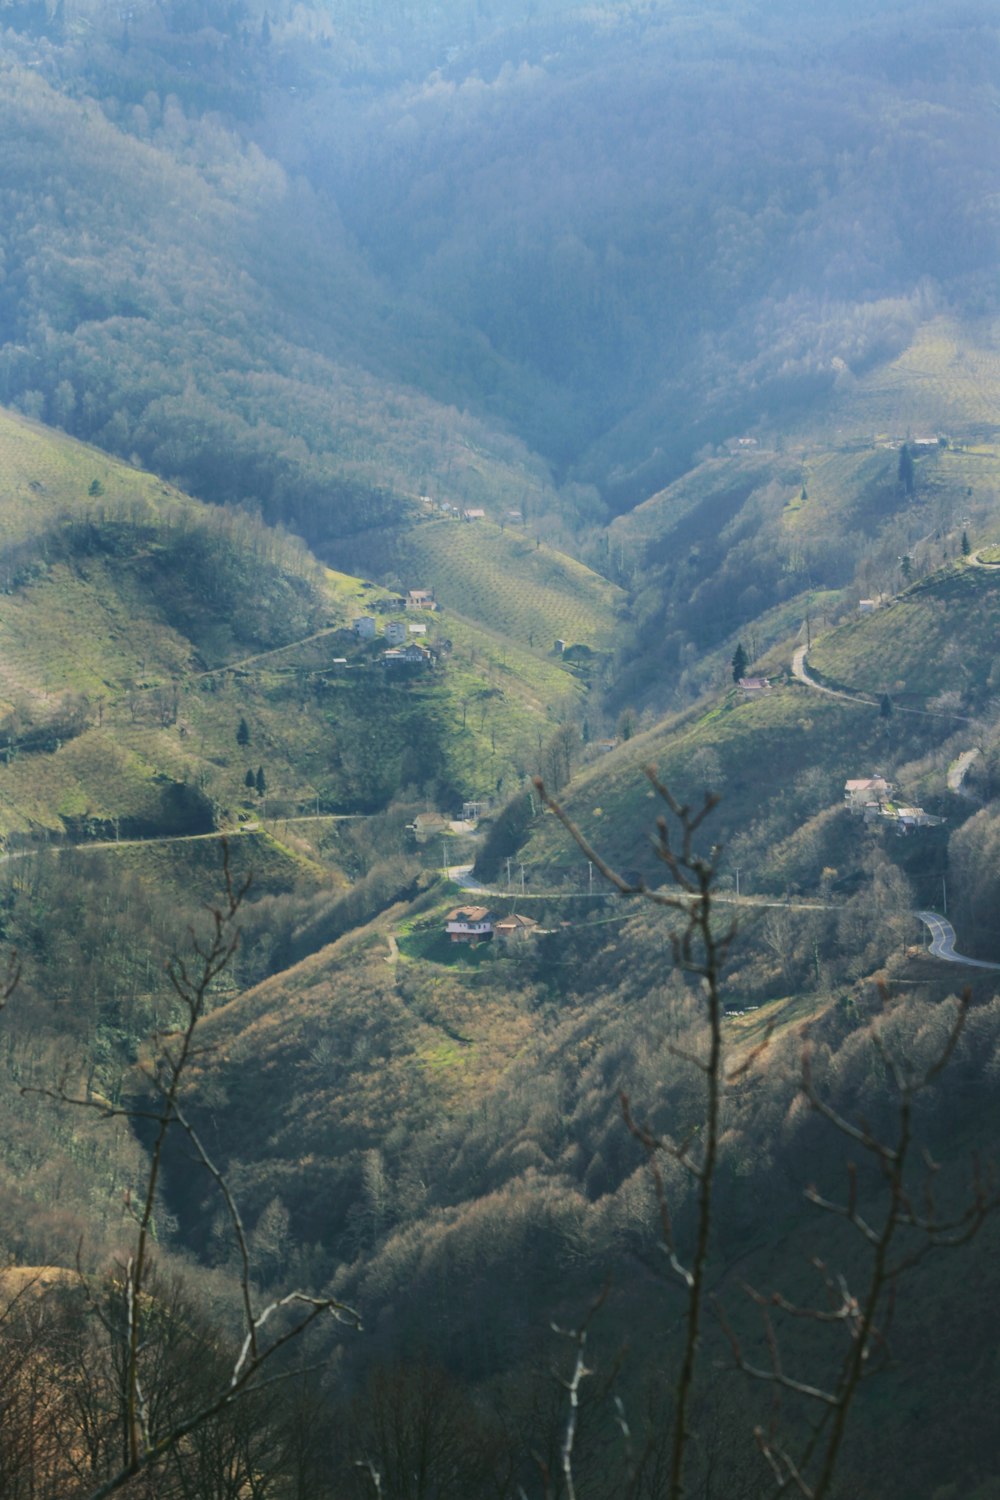 Una vista de un valle con una carretera que lo atraviesa